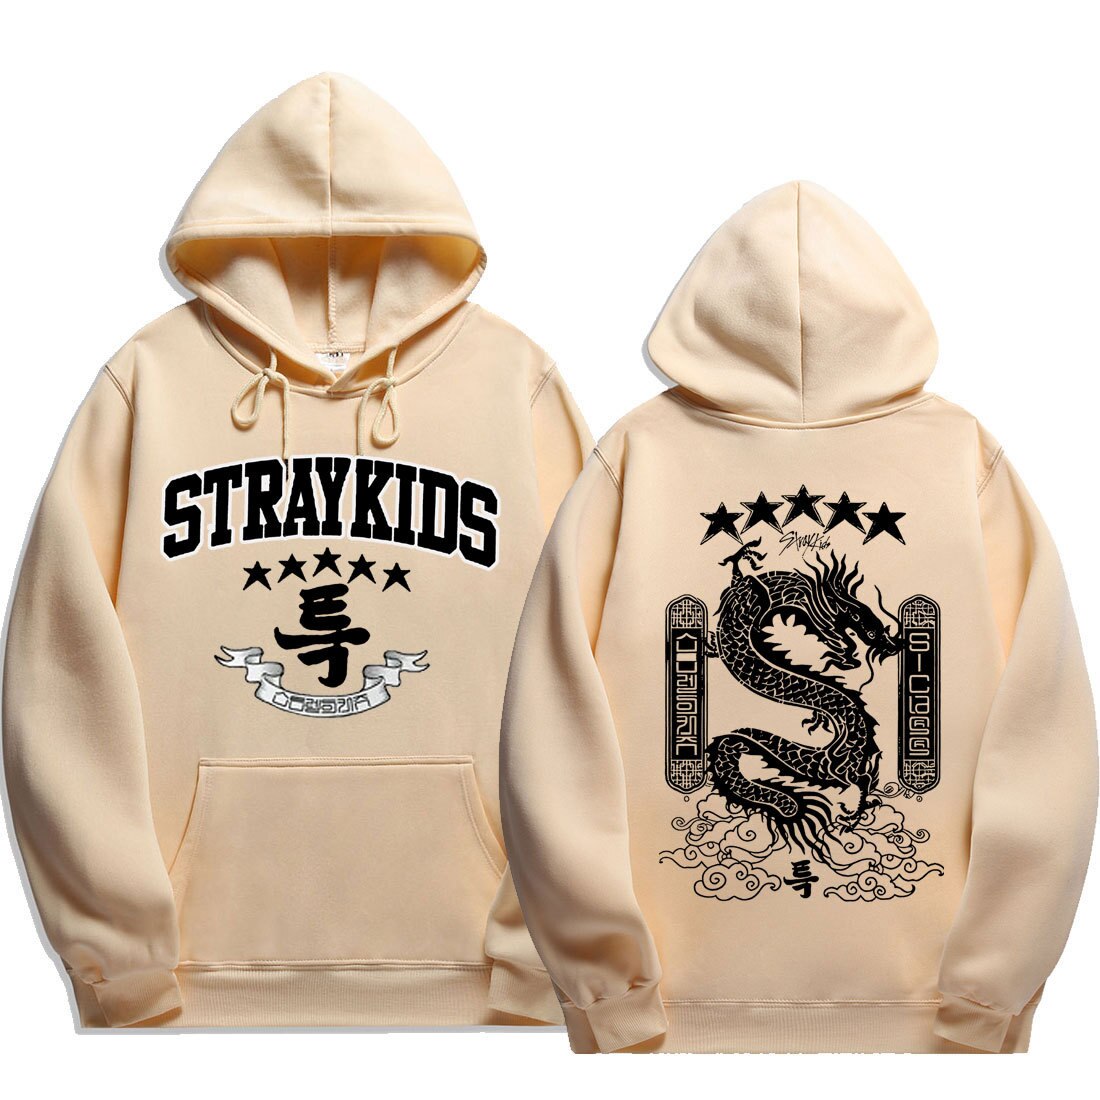 Kpop stray kids hoodies lumineux femmes hommes streatwear sweat